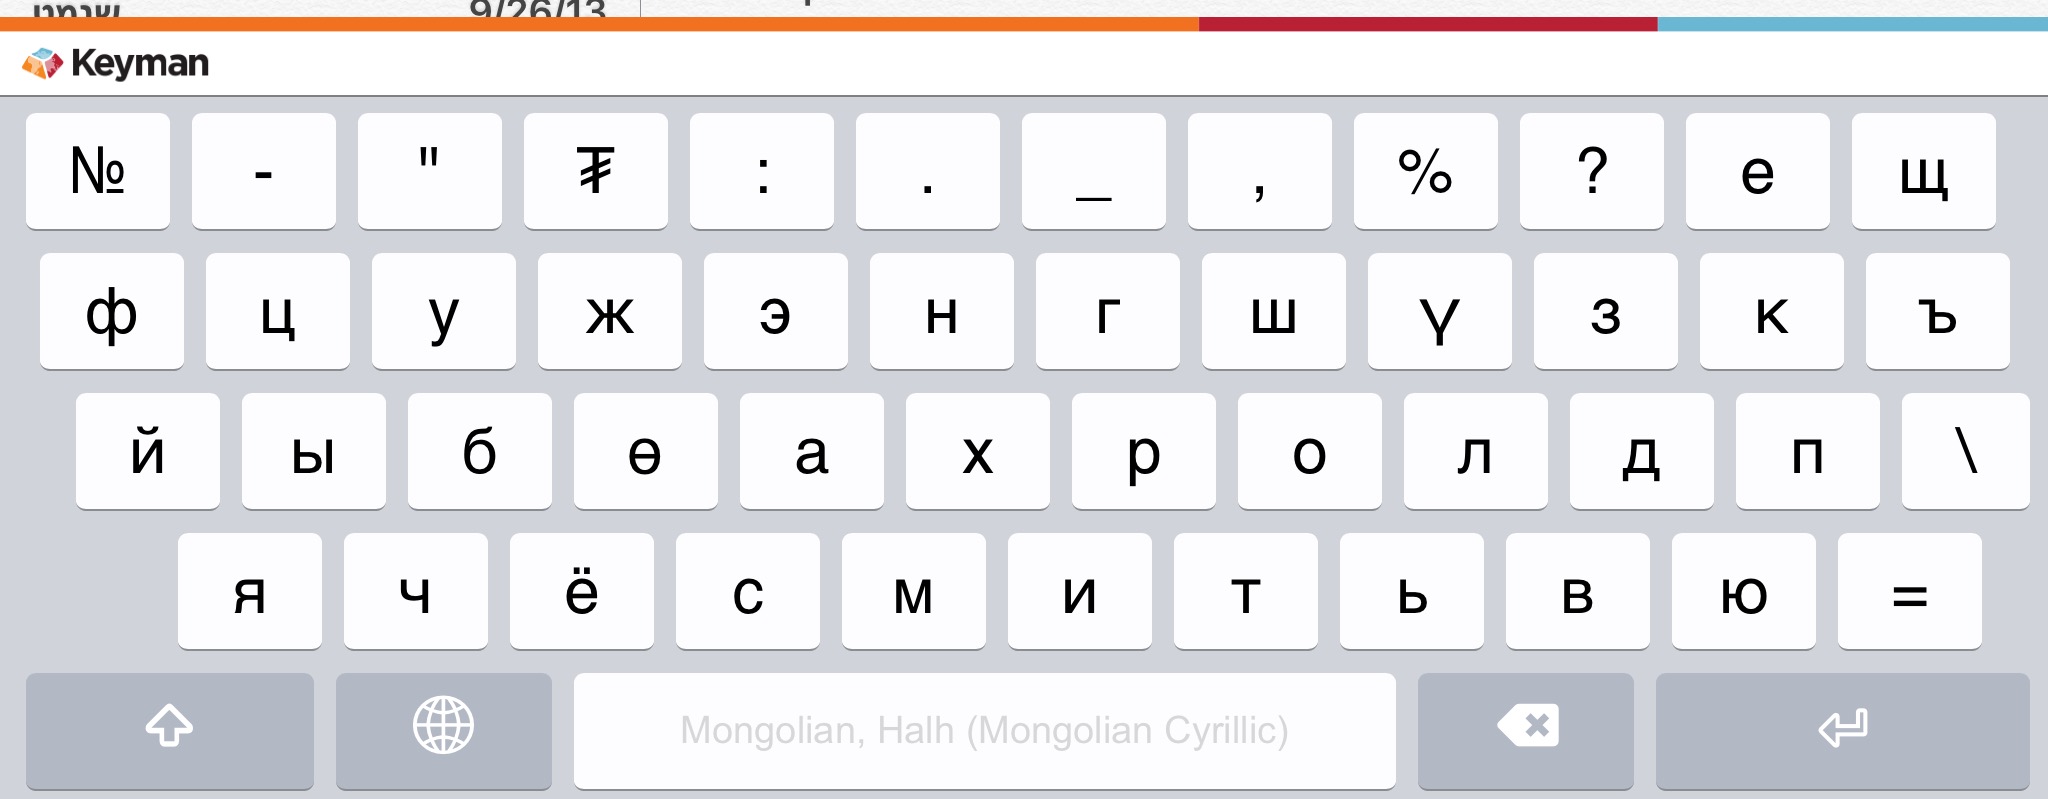 Mongolian font for mac